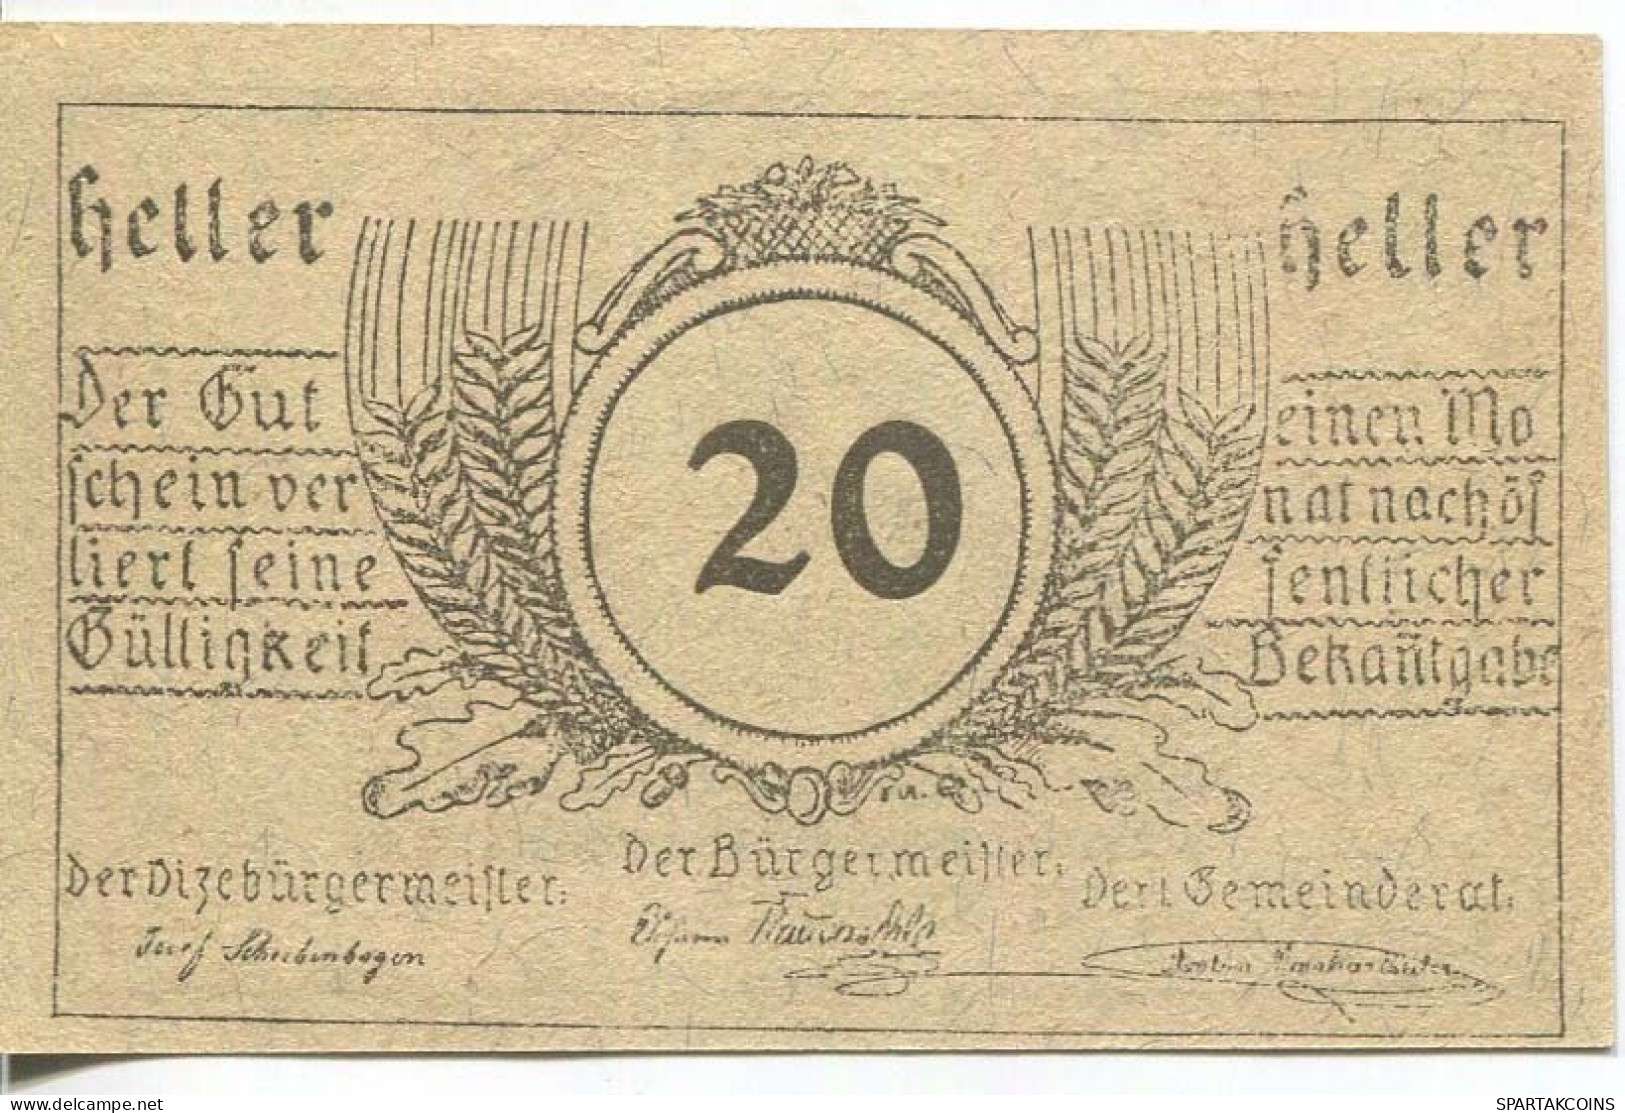 20 HELLER 1920 Stadt MUNDERFING Oberösterreich Österreich Notgeld Papiergeld Banknote #PL795 - [11] Local Banknote Issues